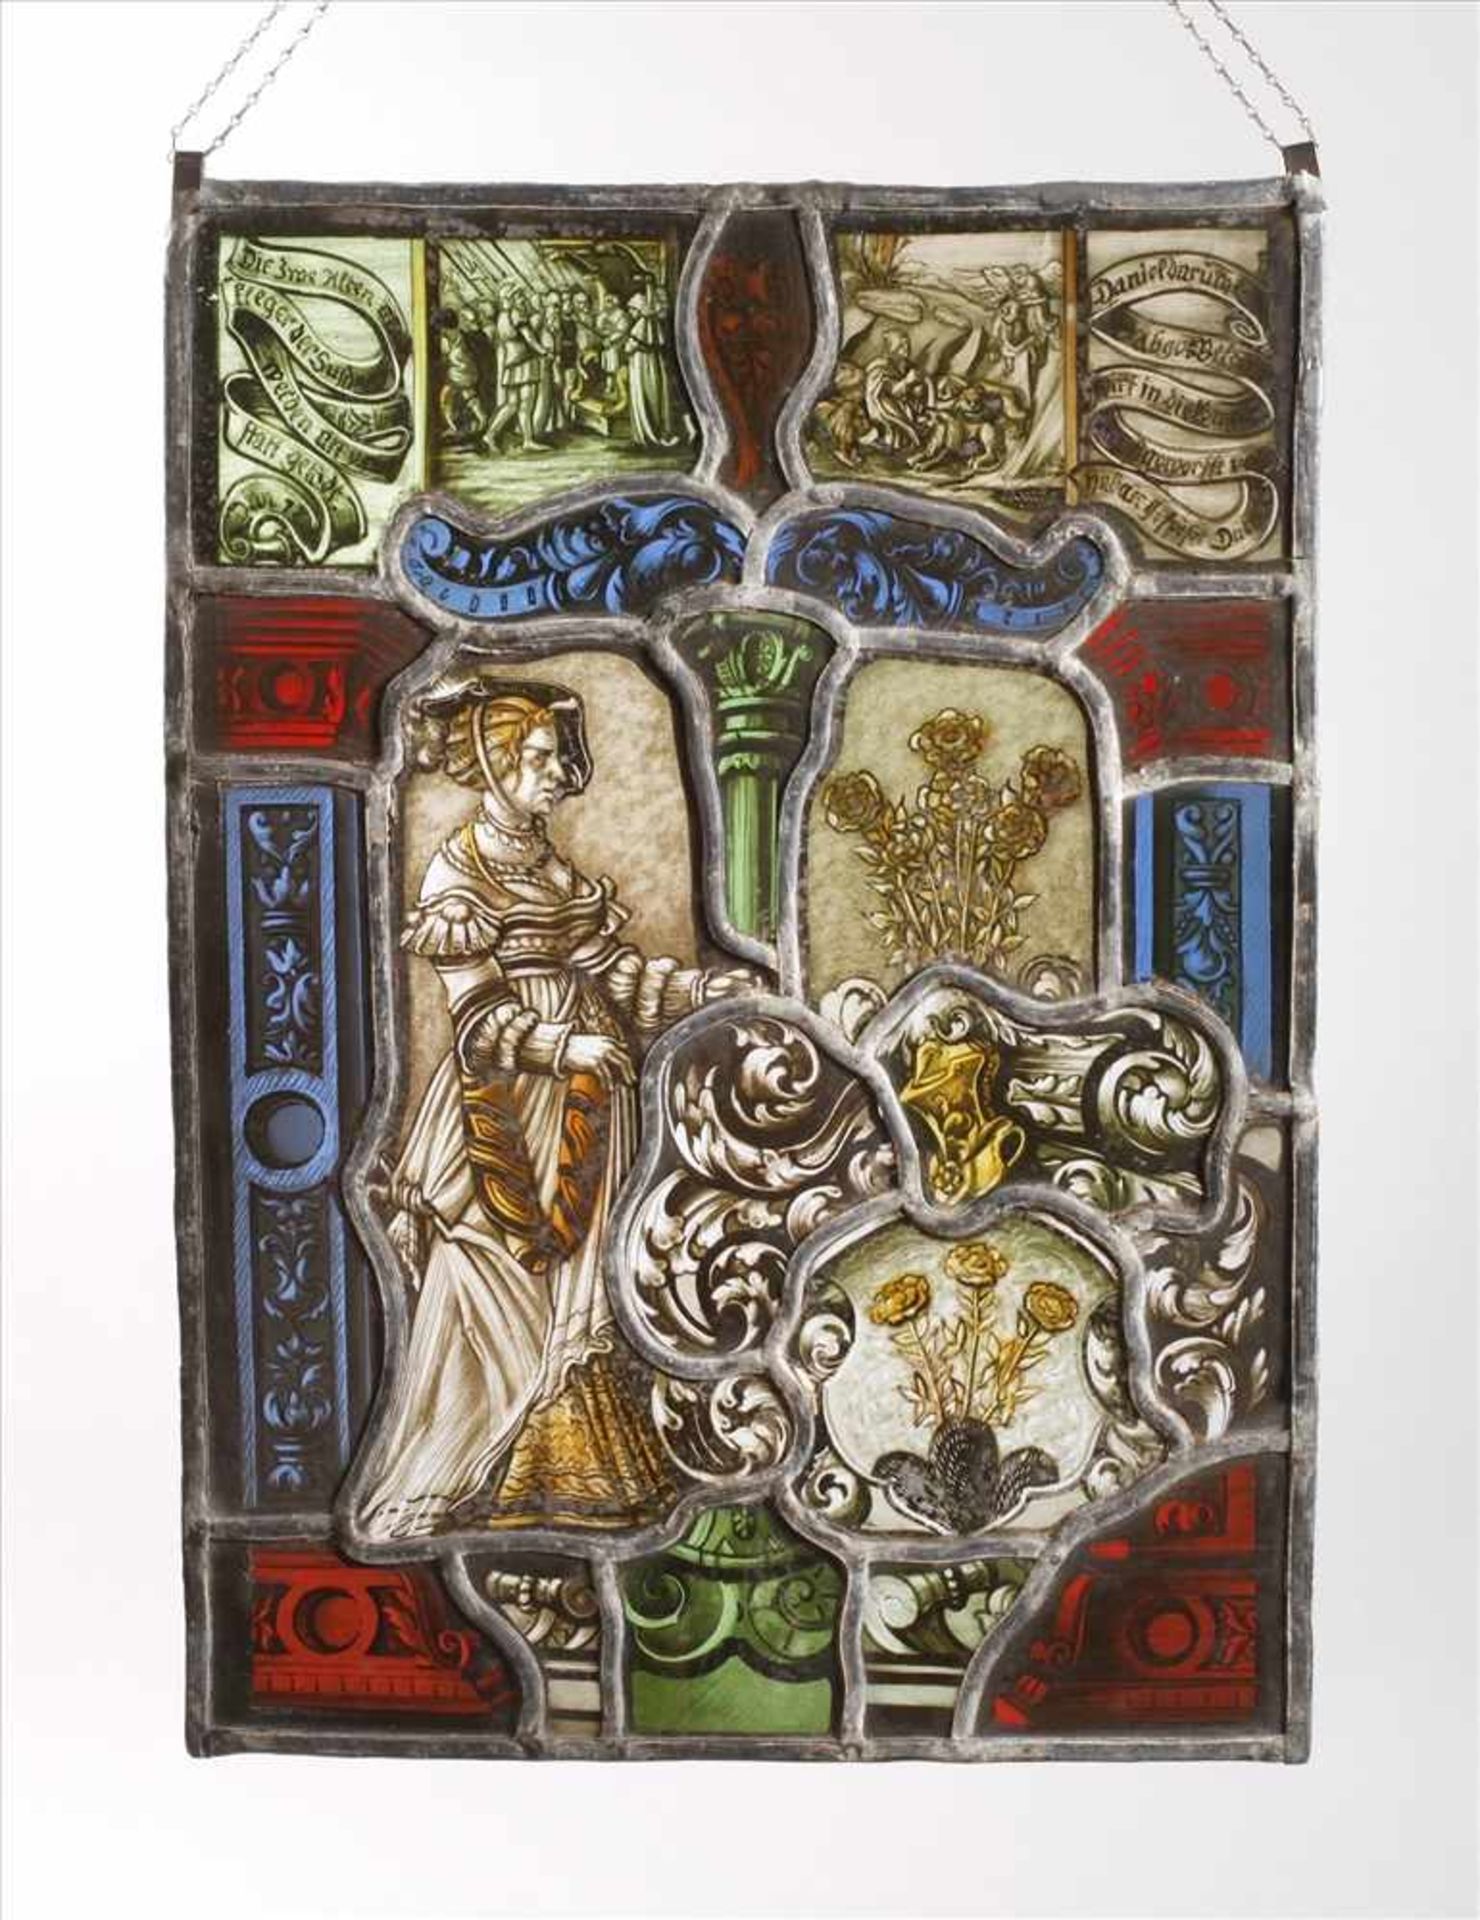 Bleiglasfenster im Renaissancestil19. Jh., in den Ecken Spruchbänder, biblische Szenen, guter